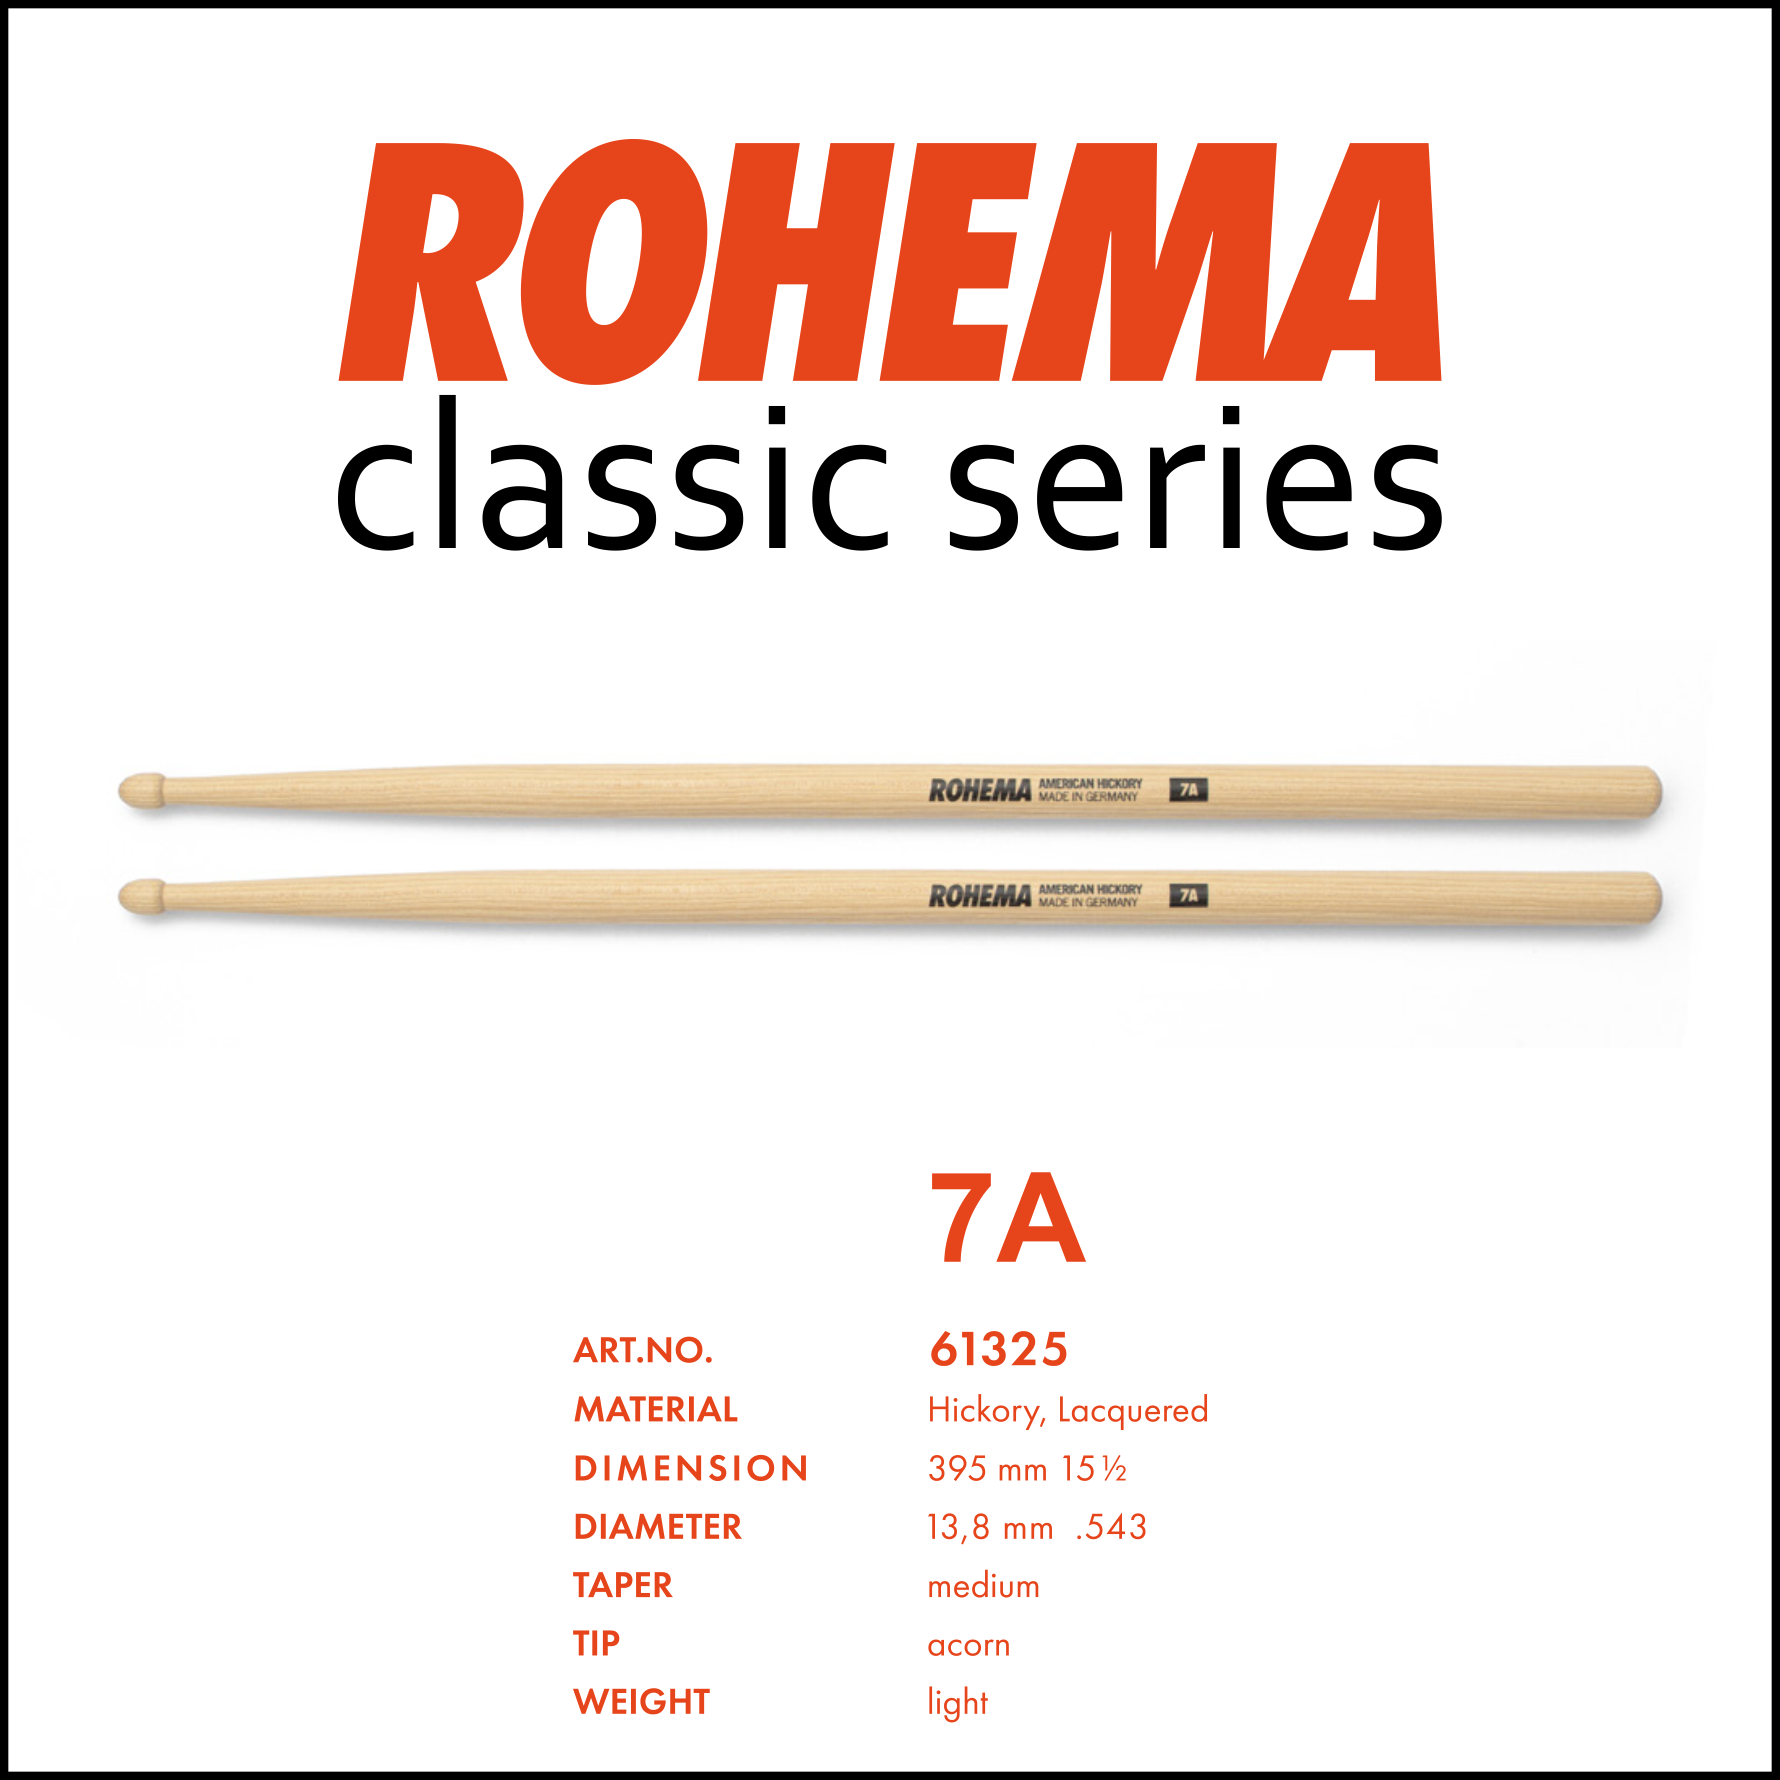 Rohema Classic Series 7A: Professionele, stevige, duurzame en vriendelijke geprijsde drumstokken.